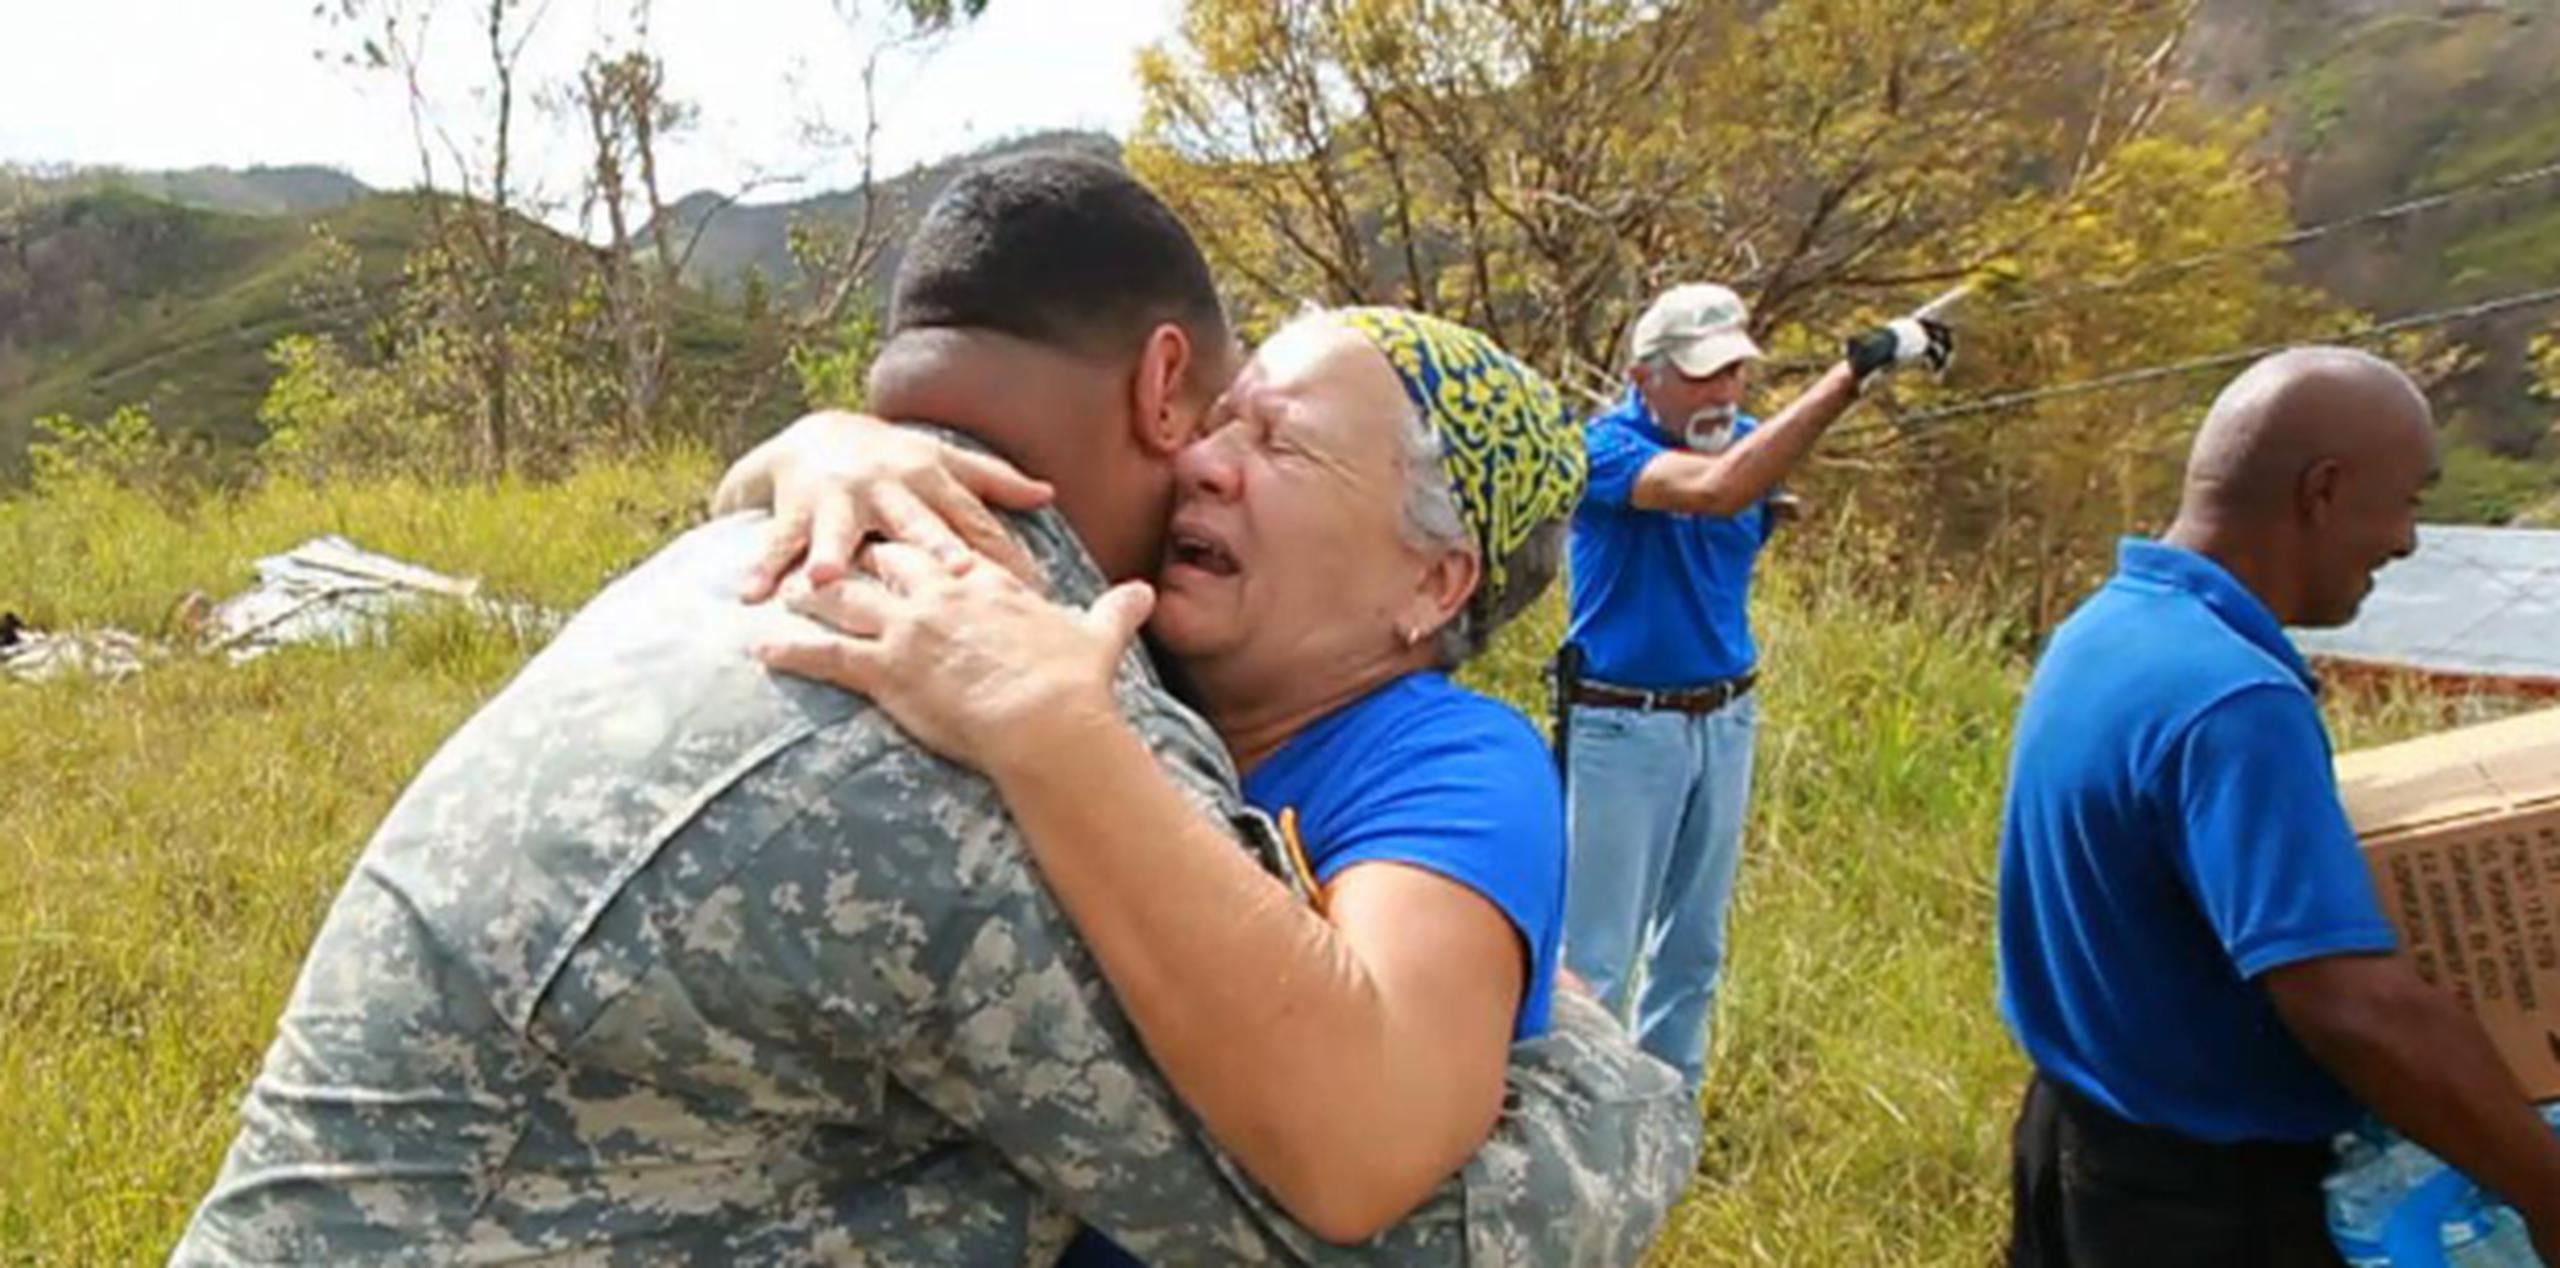 Una mujer llora de agradecimiento mientras abraza a un soldado que le llevó suministros en helicóptero. (alex.figueroa@gfrmedia.com)